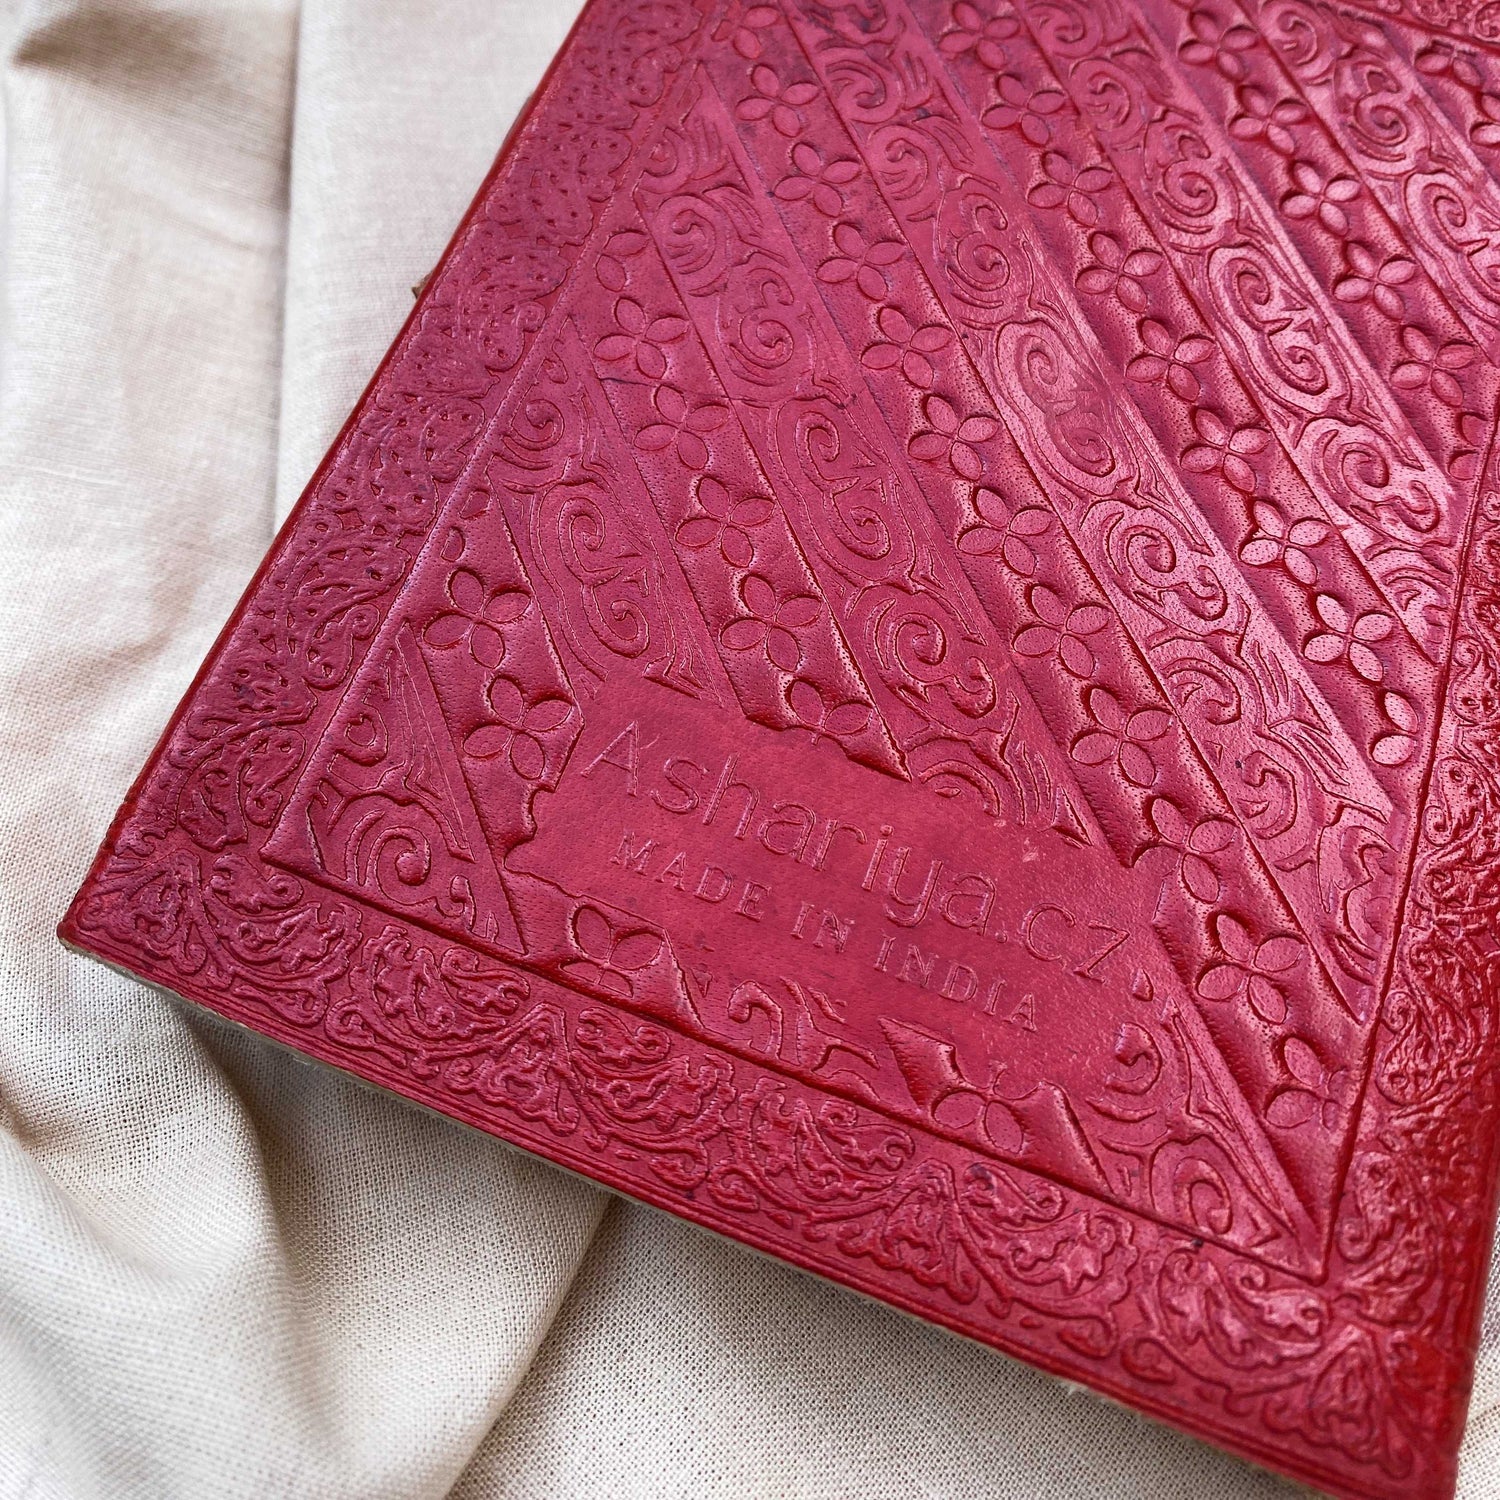 Agira अगिर- kožený zápisník (malý) - Ashariya